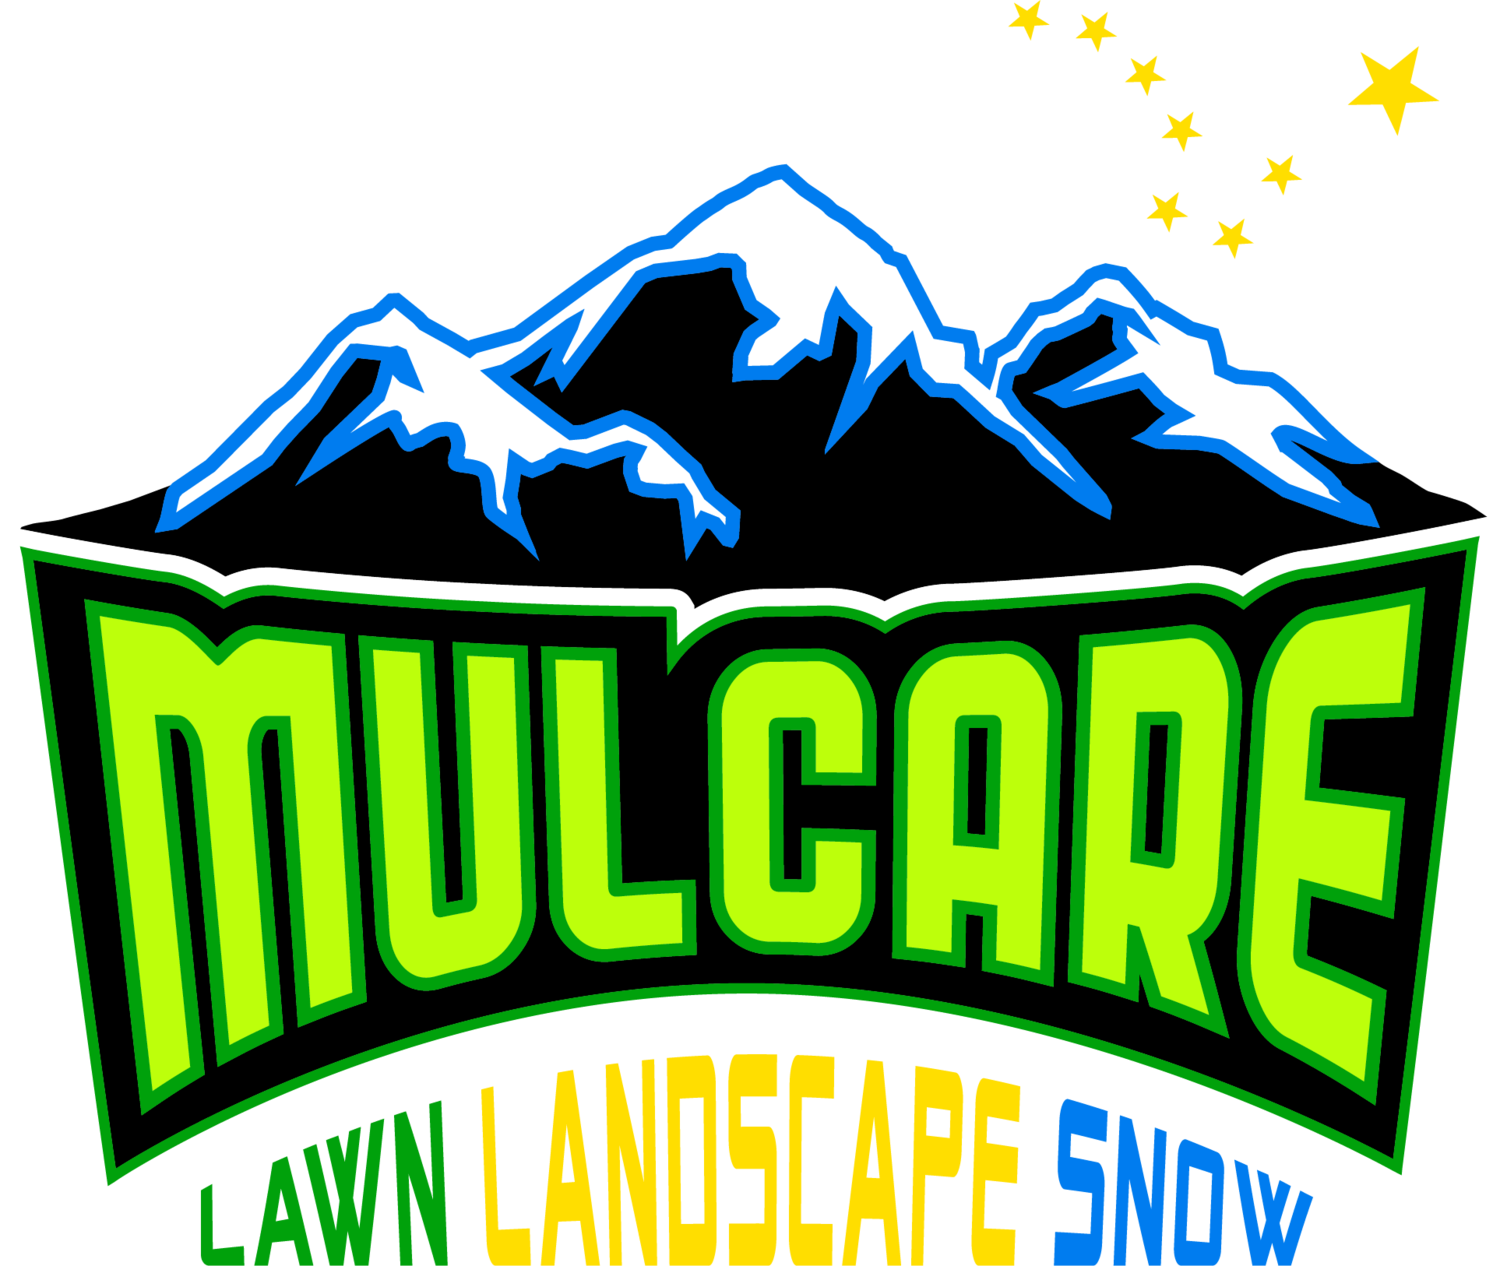 Mulcare Lawn Care